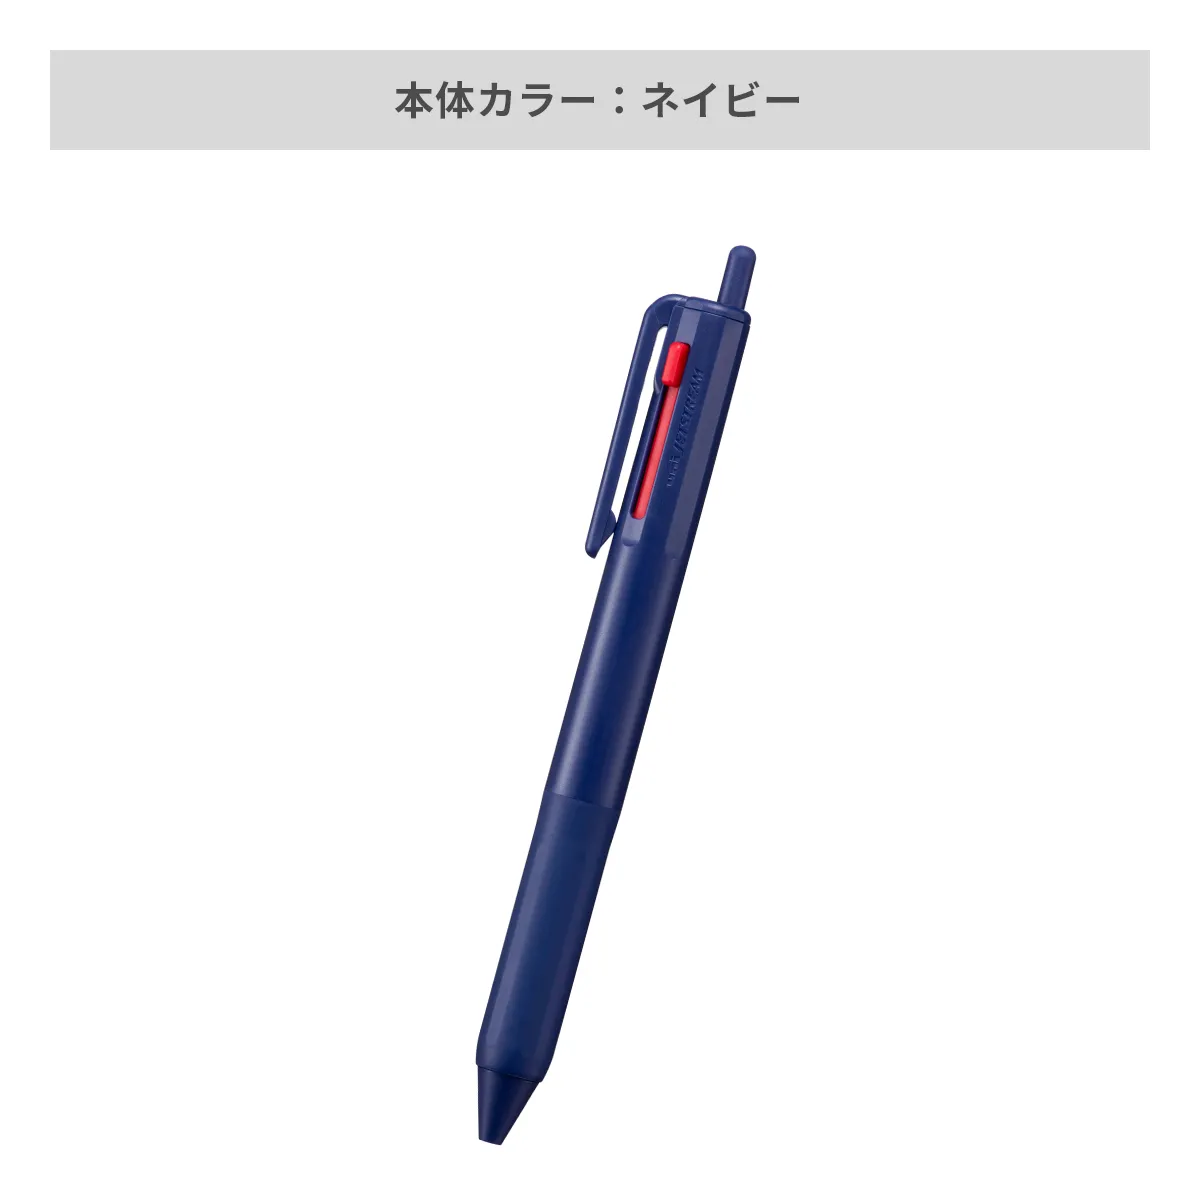 三菱鉛筆 ジェットストリーム 3色ボールペン 0.7mm【名入れボールペン / パッド印刷】 画像4